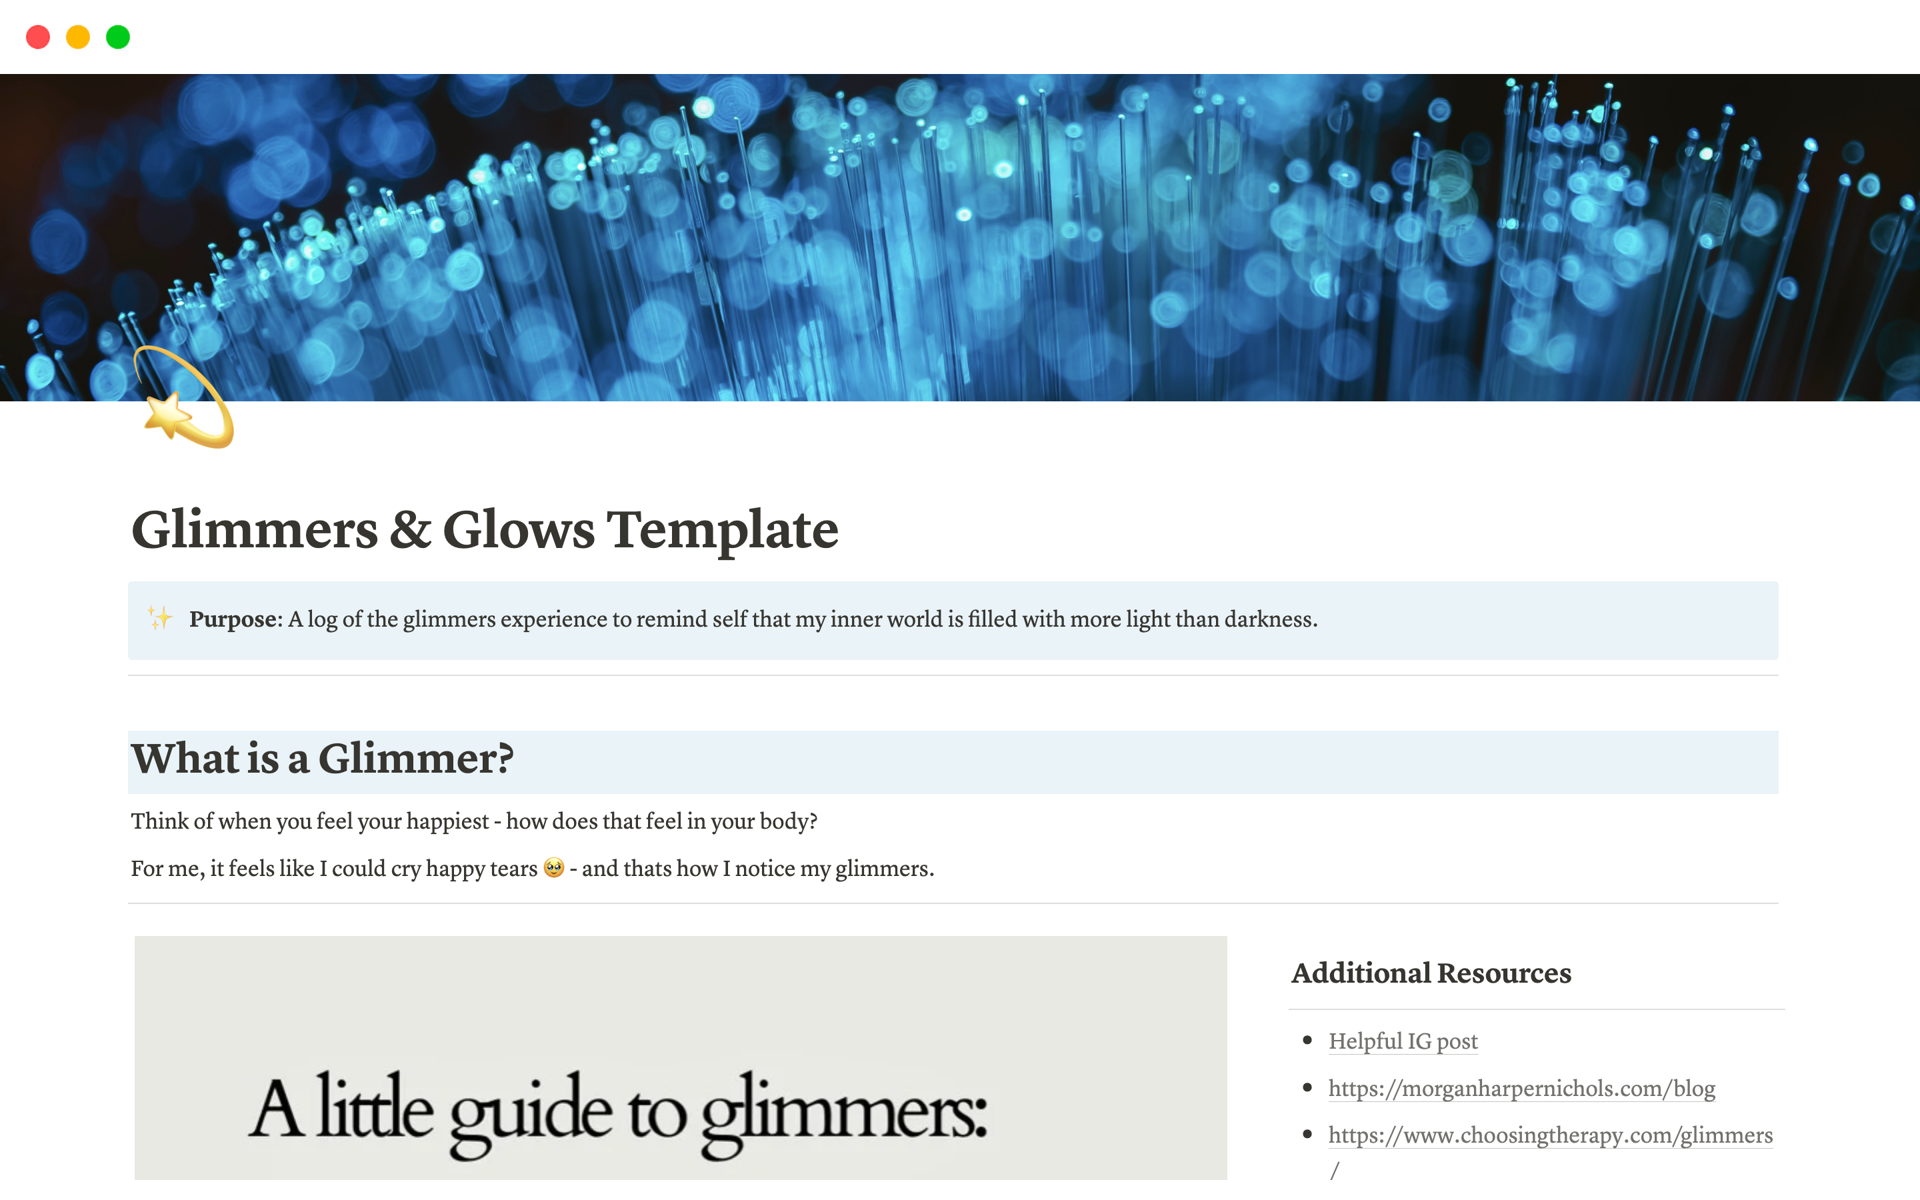 Uma prévia do modelo para Glimmers & Glows